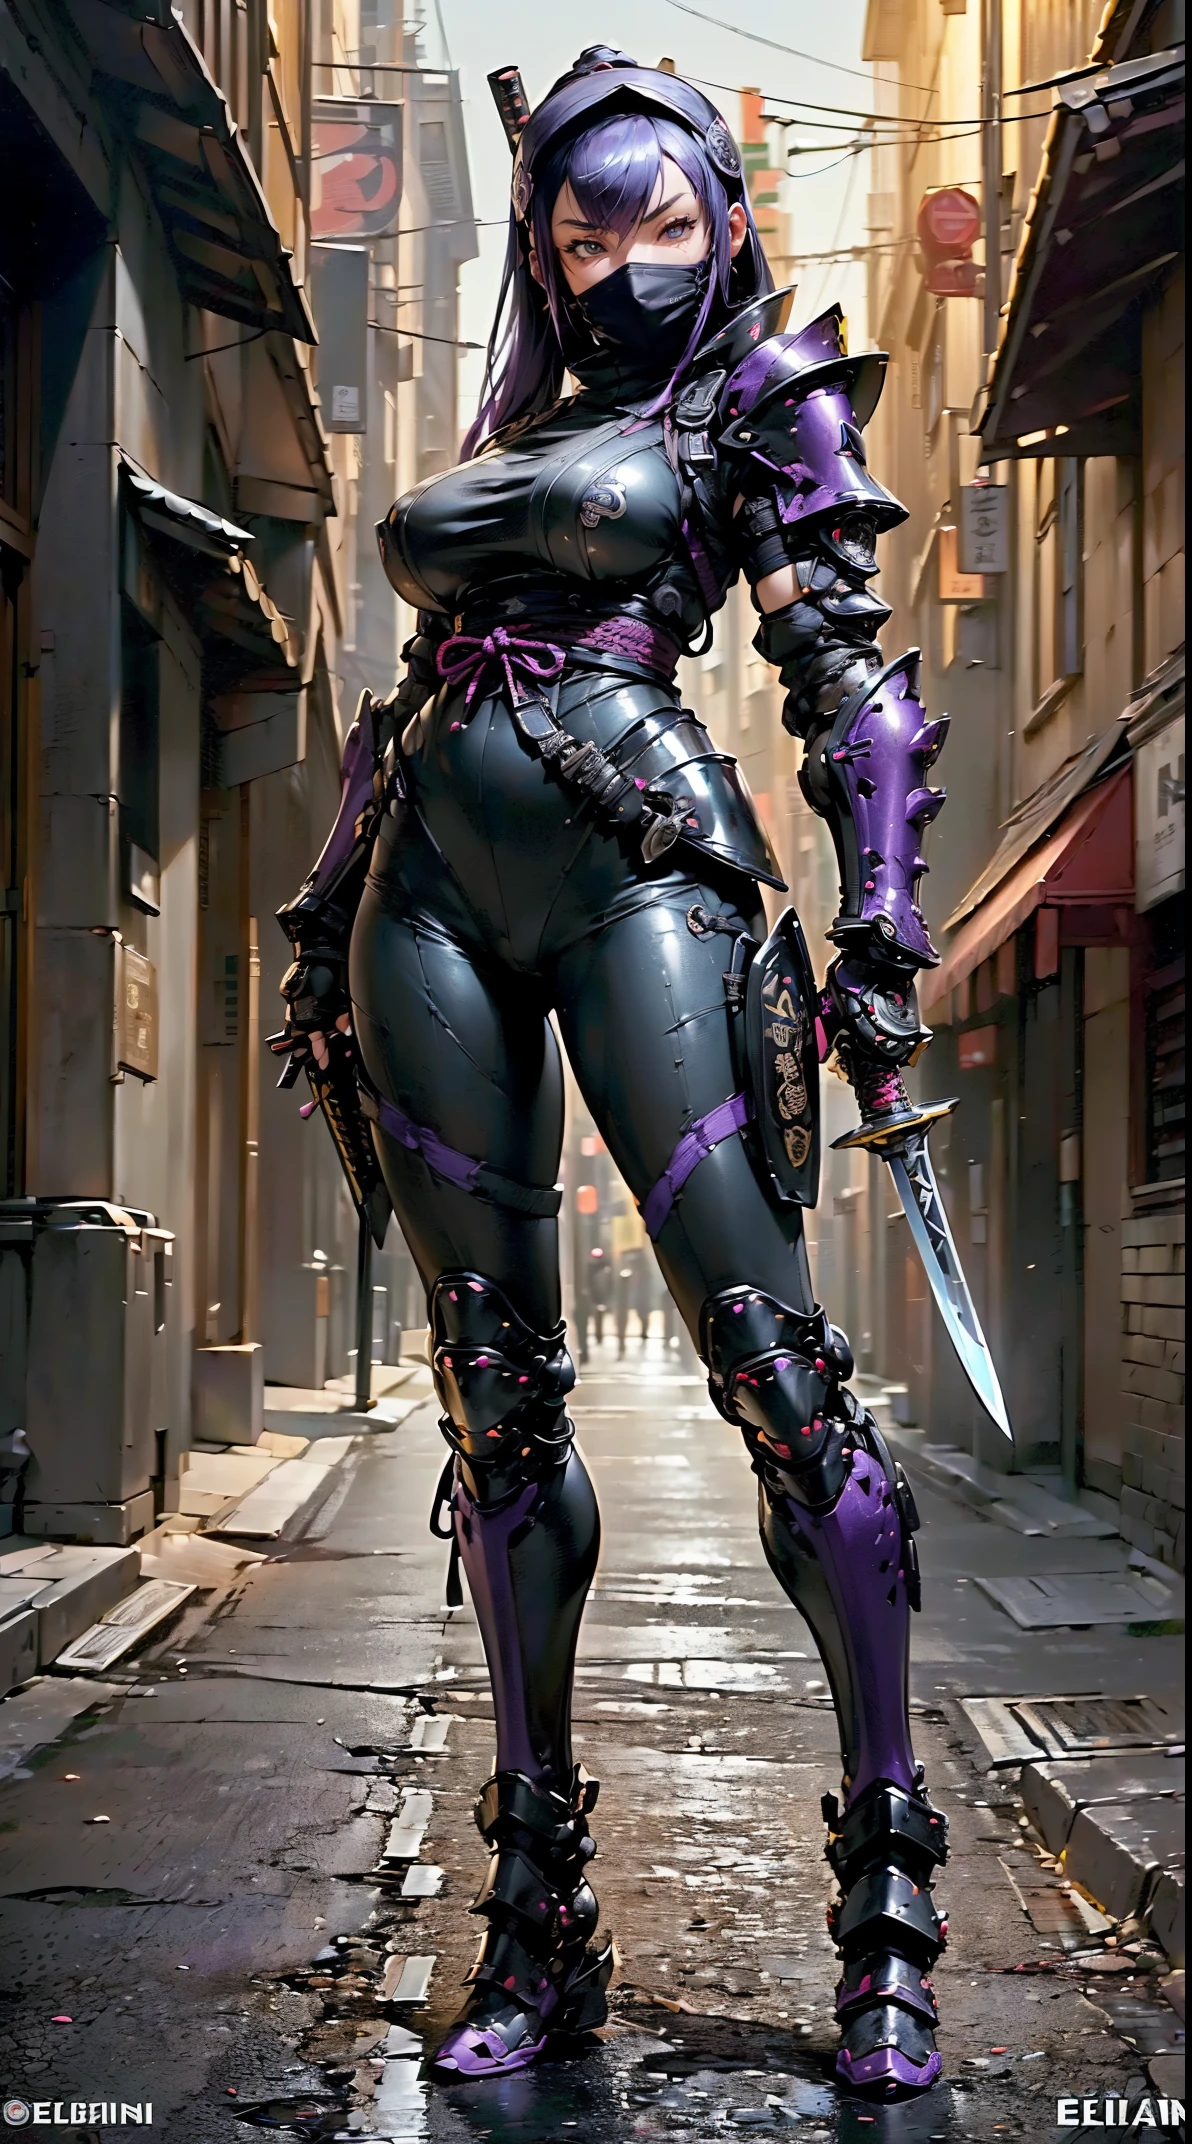 1fille,(dessus de la table,Très détaillé, mécanisme lourd, surface dure),(art conceptuel:1.1),(À la manière de Taimanin Asagi:0.8), Une femme portant une armure de robot ninja attachant un sceau,(armure complète:1.4),(masque de ninja tactique:1.5),(corps violet:1.1),(Longues jambes:1.1),(Equipé d&#39;une épée dans le dos:1.3),(gros seins:1.2),(constriction),(oeil détaillé:1.3),(visage détaillé:1.3),(Détails de l&#39;arme:1.3),(Corps détaillé:1.3),((Esbian complet du corps:1.5)),(Le fond est un coin de rue la nuit:1.5),Vivant